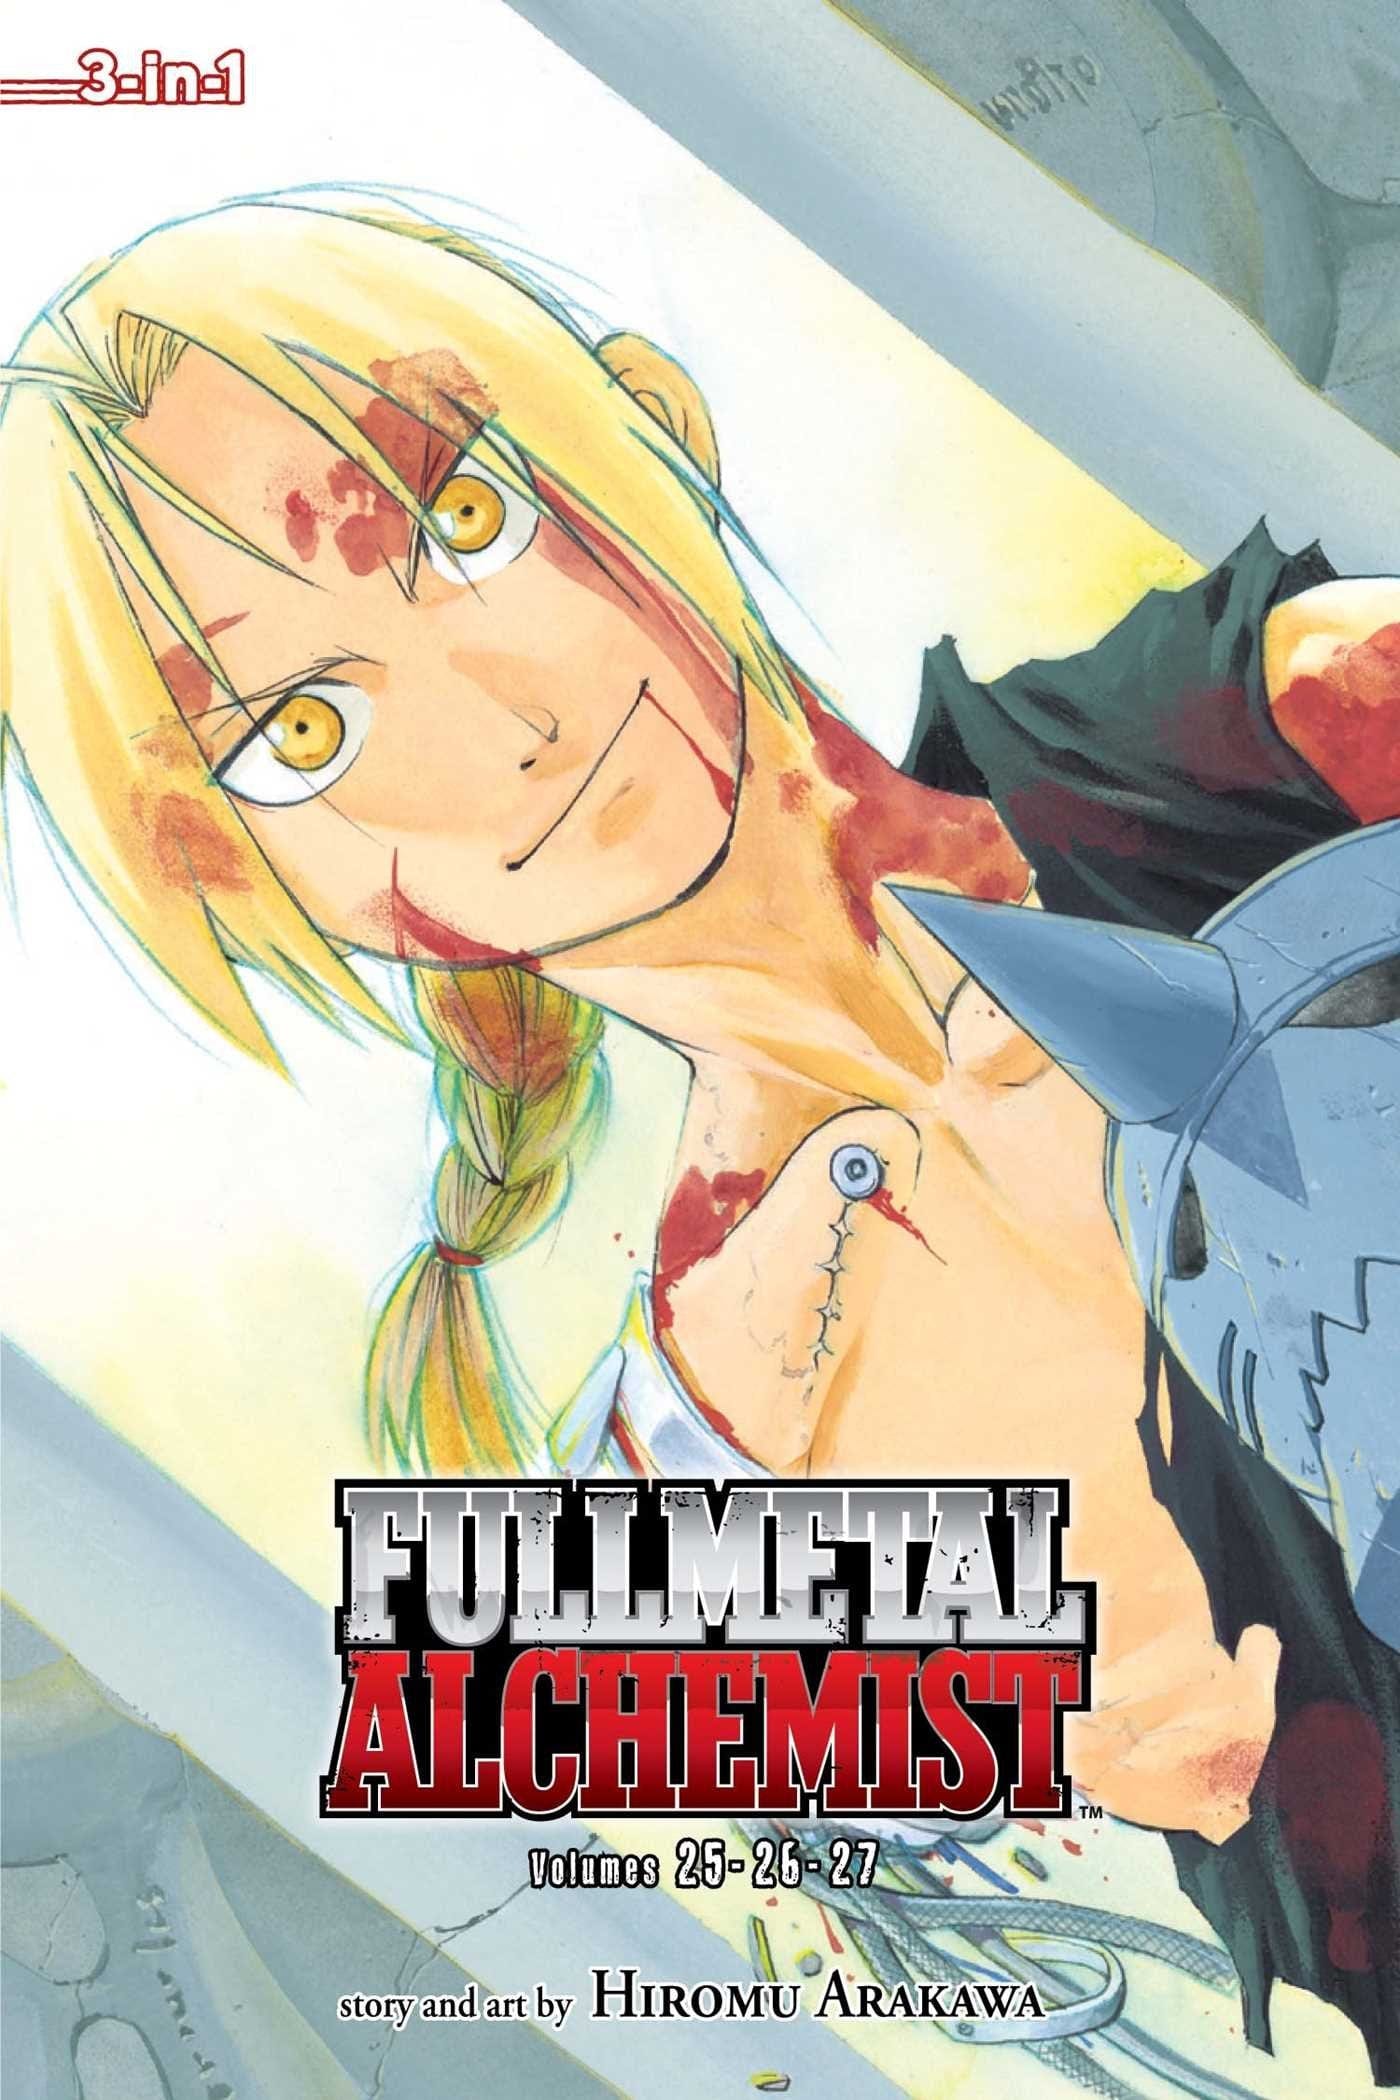 Fullmetal Alchemist 3-in-1: Vol. 25/26/27 - Third Eye